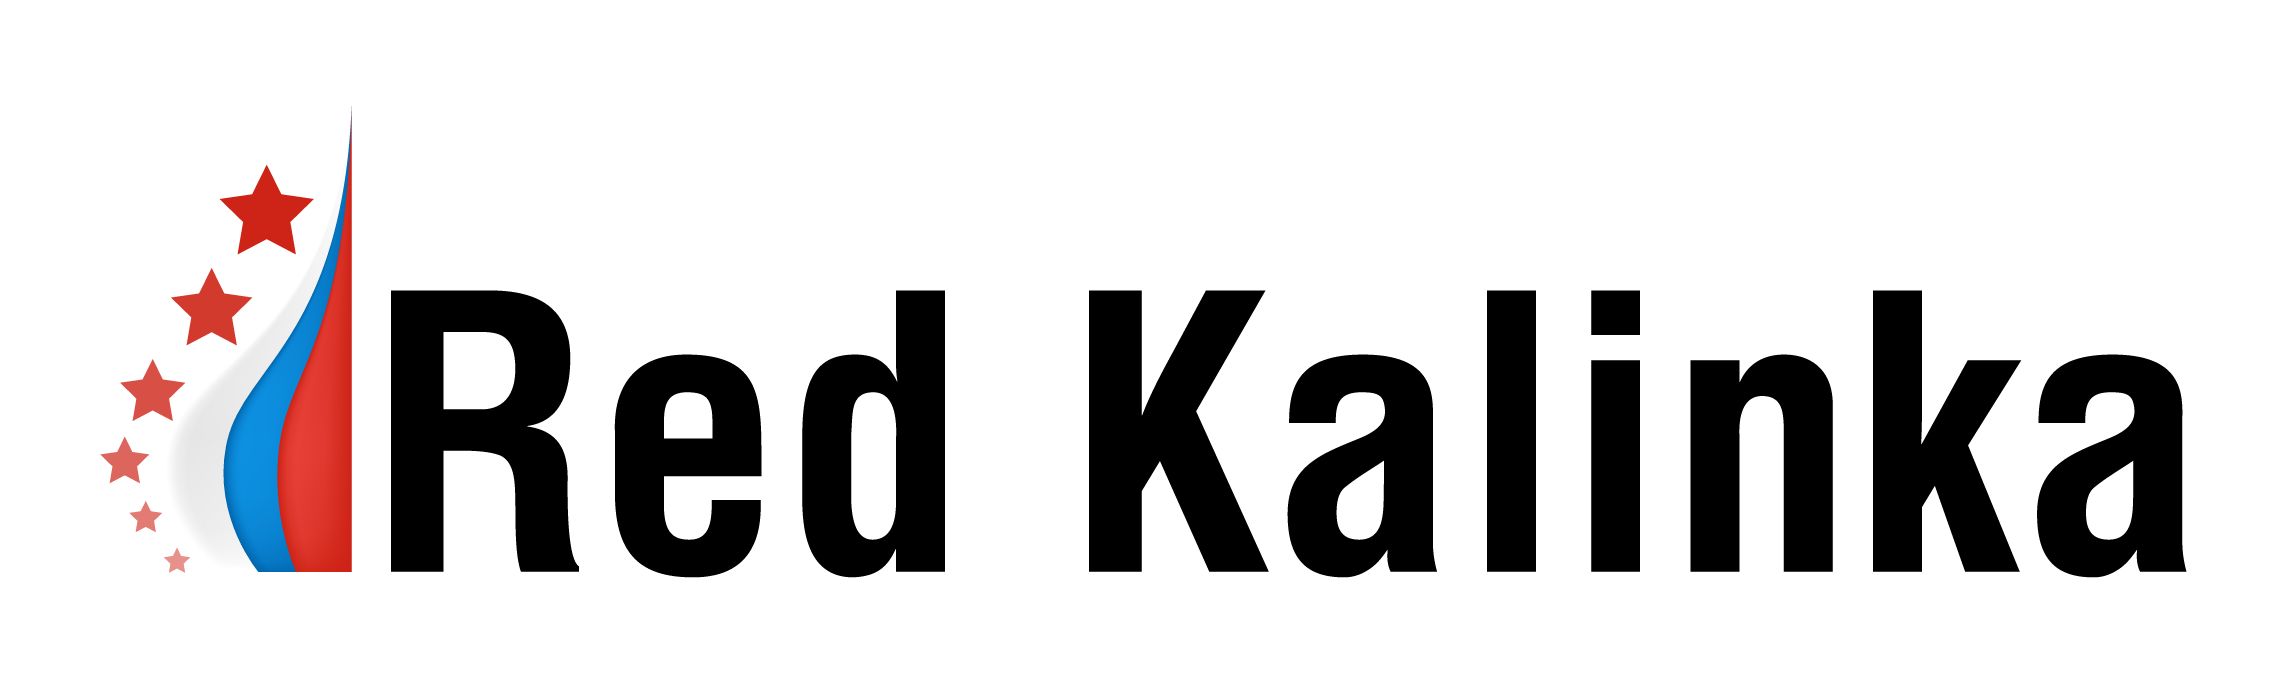 red kalinka logo